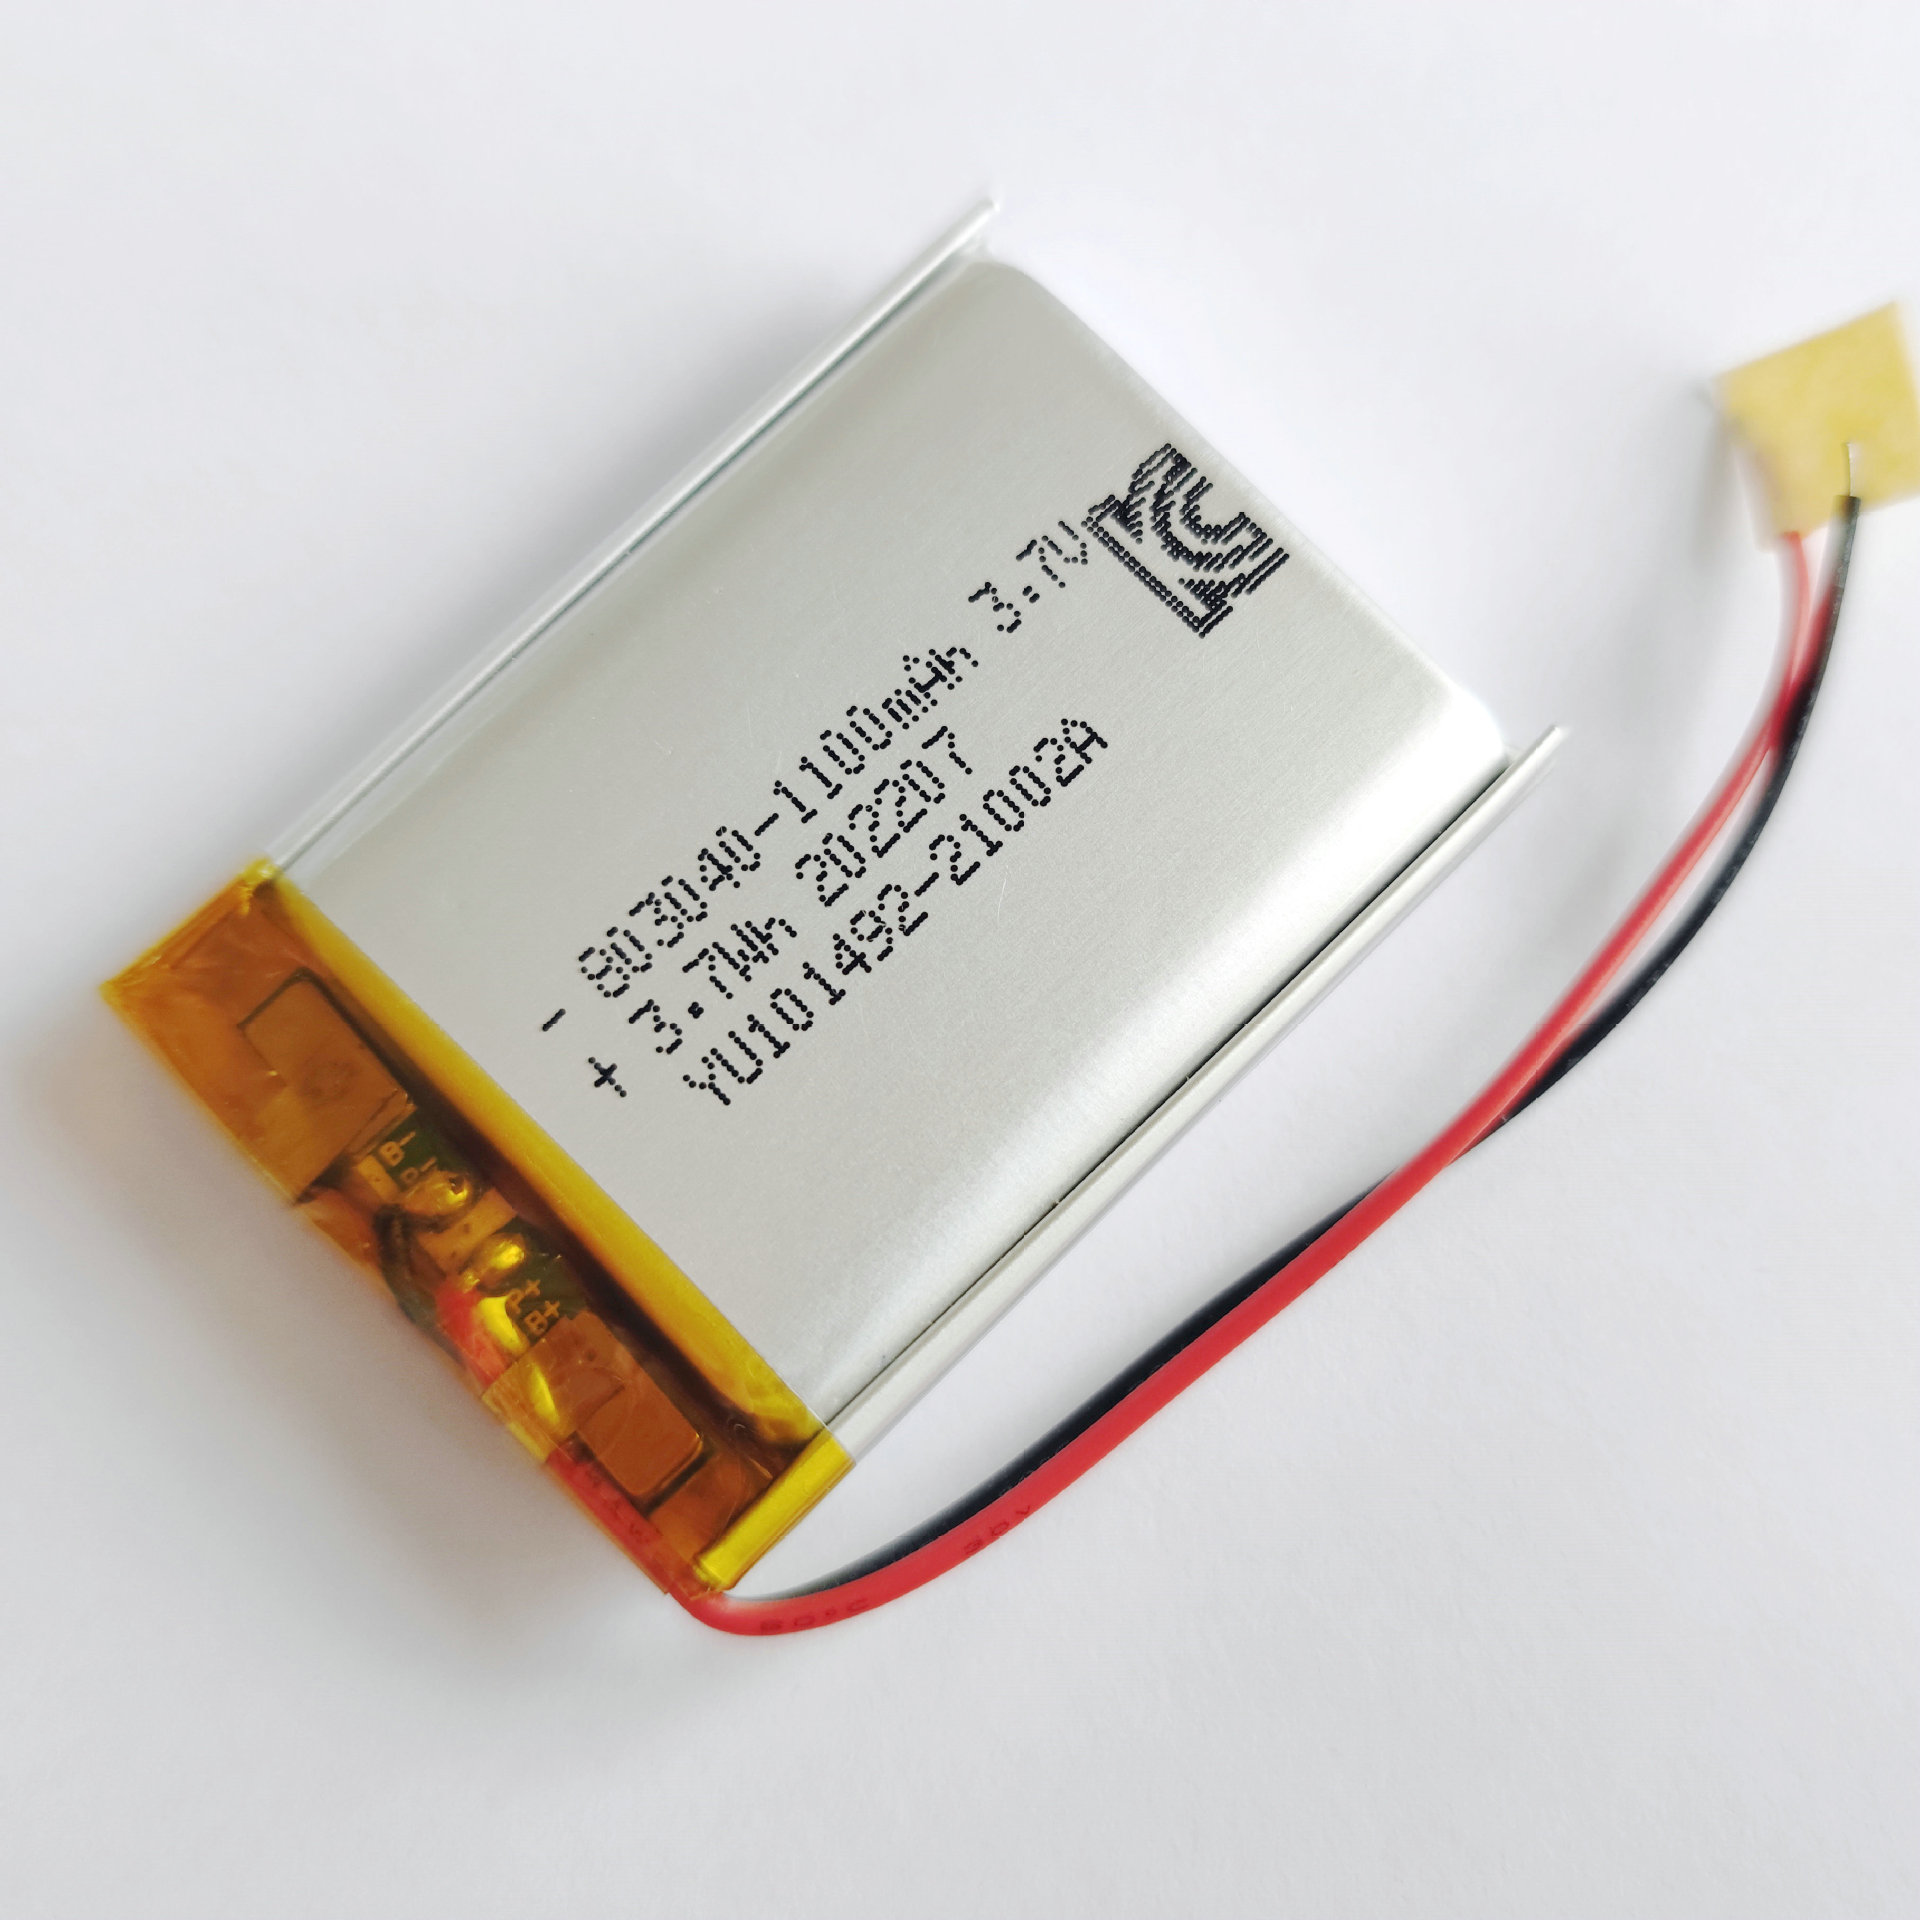 聚合物锂电池803040103040603040带保护板出线小夜灯充电锂电池